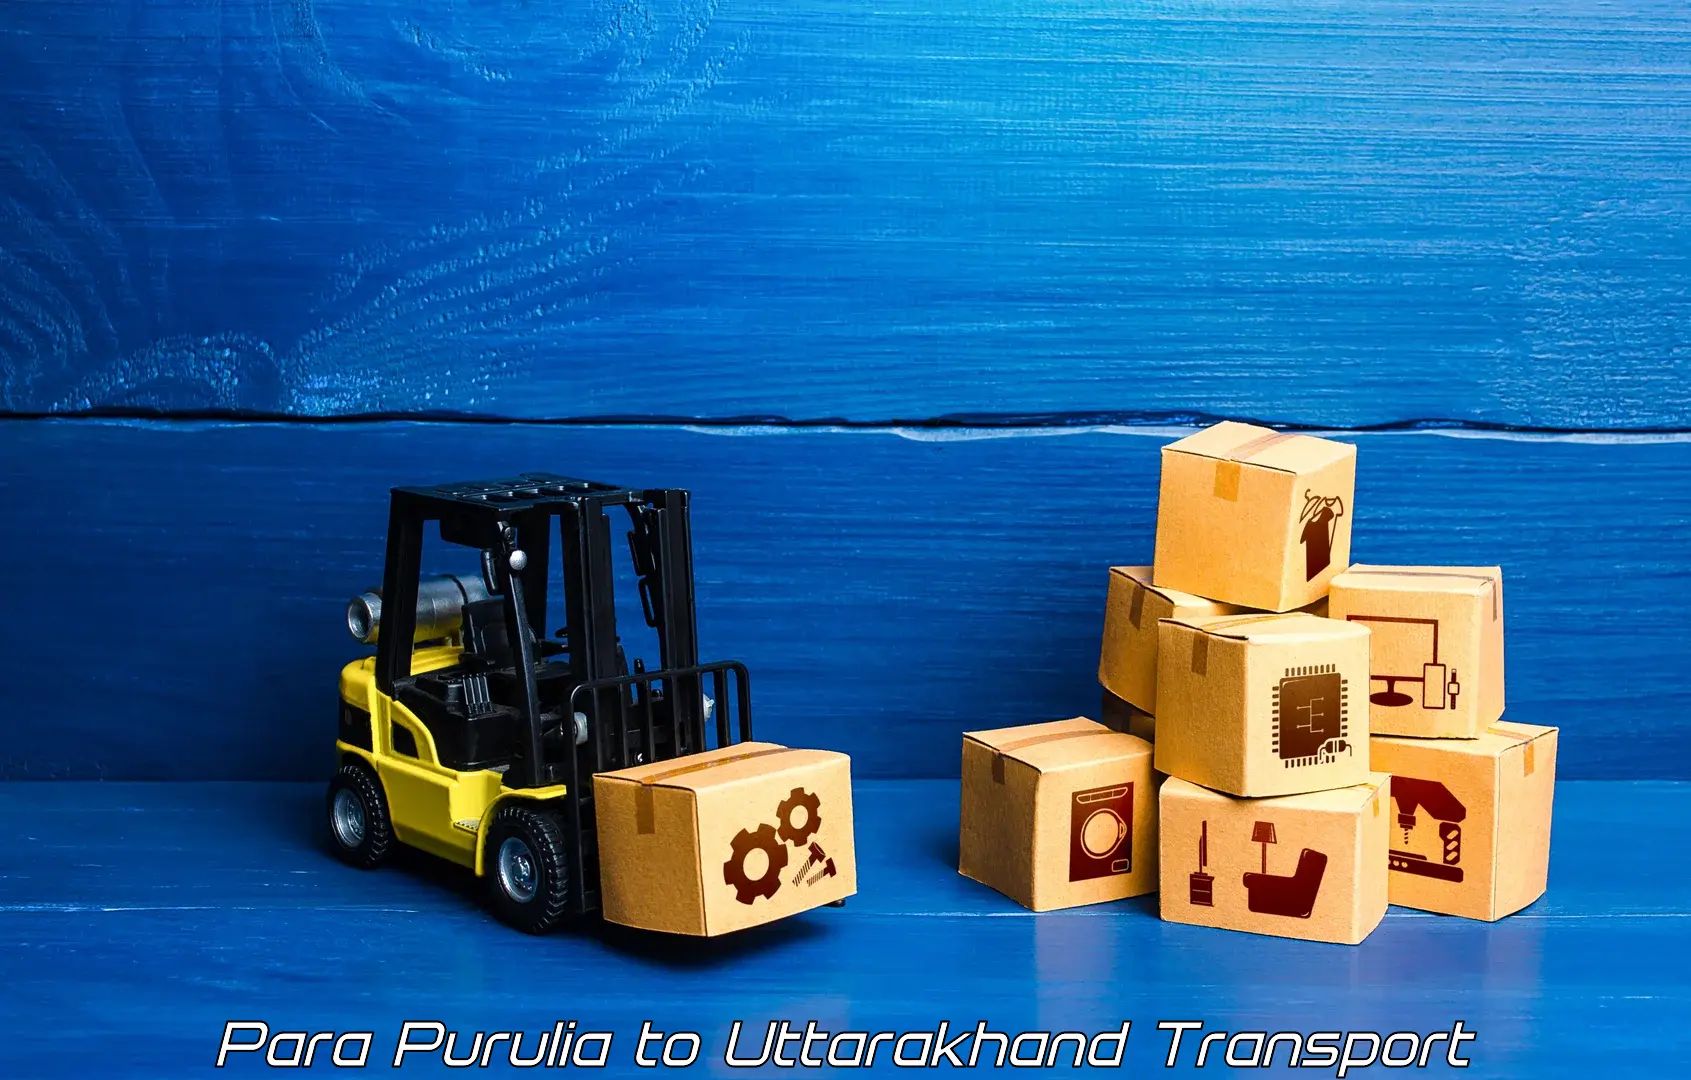 Truck transport companies in India Para Purulia to Gumkhal